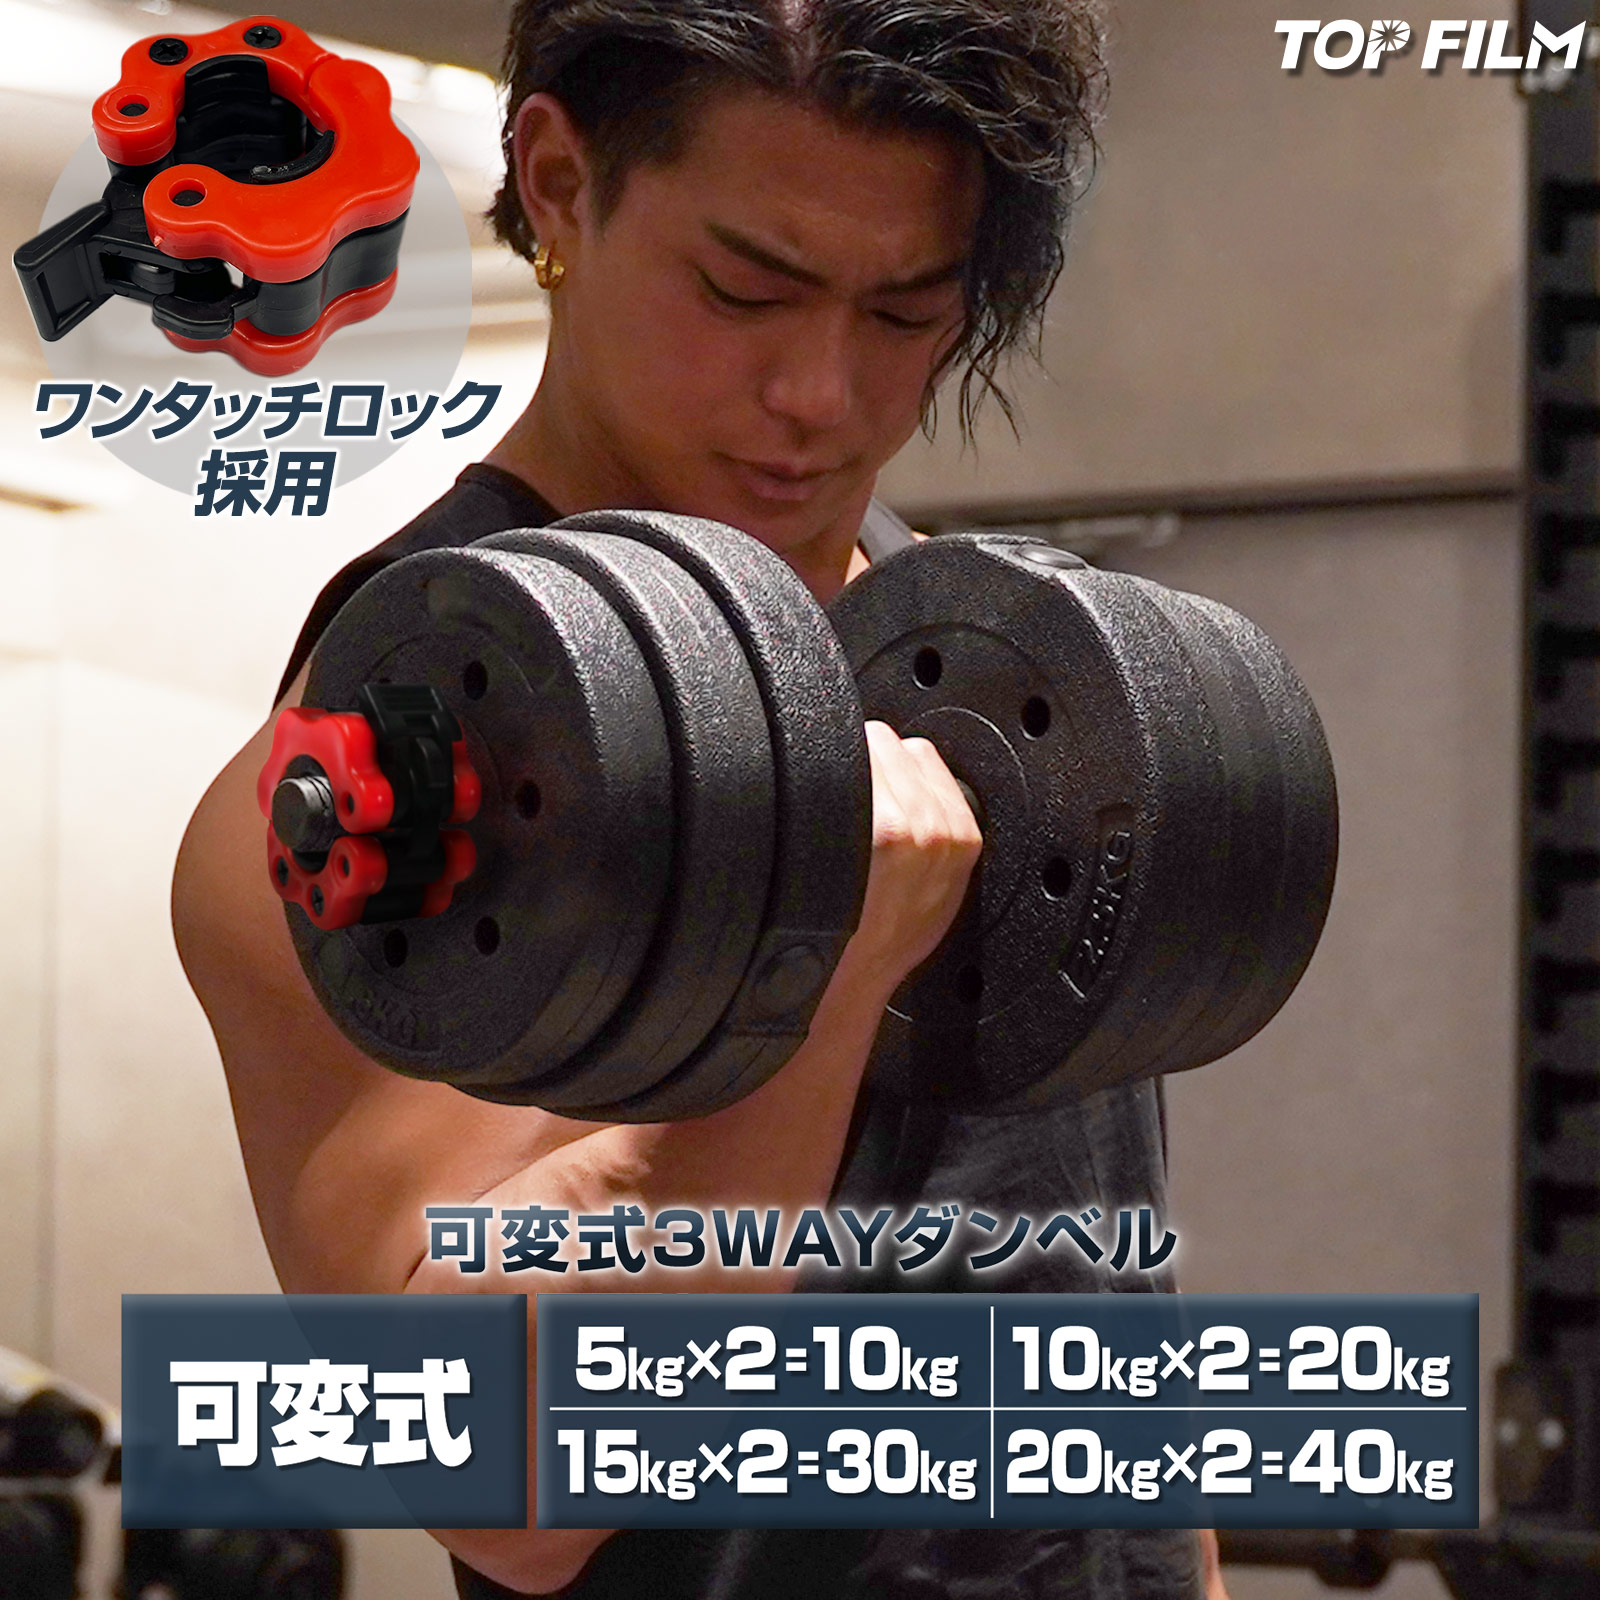 日本直販 ダンベル 可変式 小型 スチールダンベル 10kg 2個セット 無臭素材家庭用 トレーニング用品